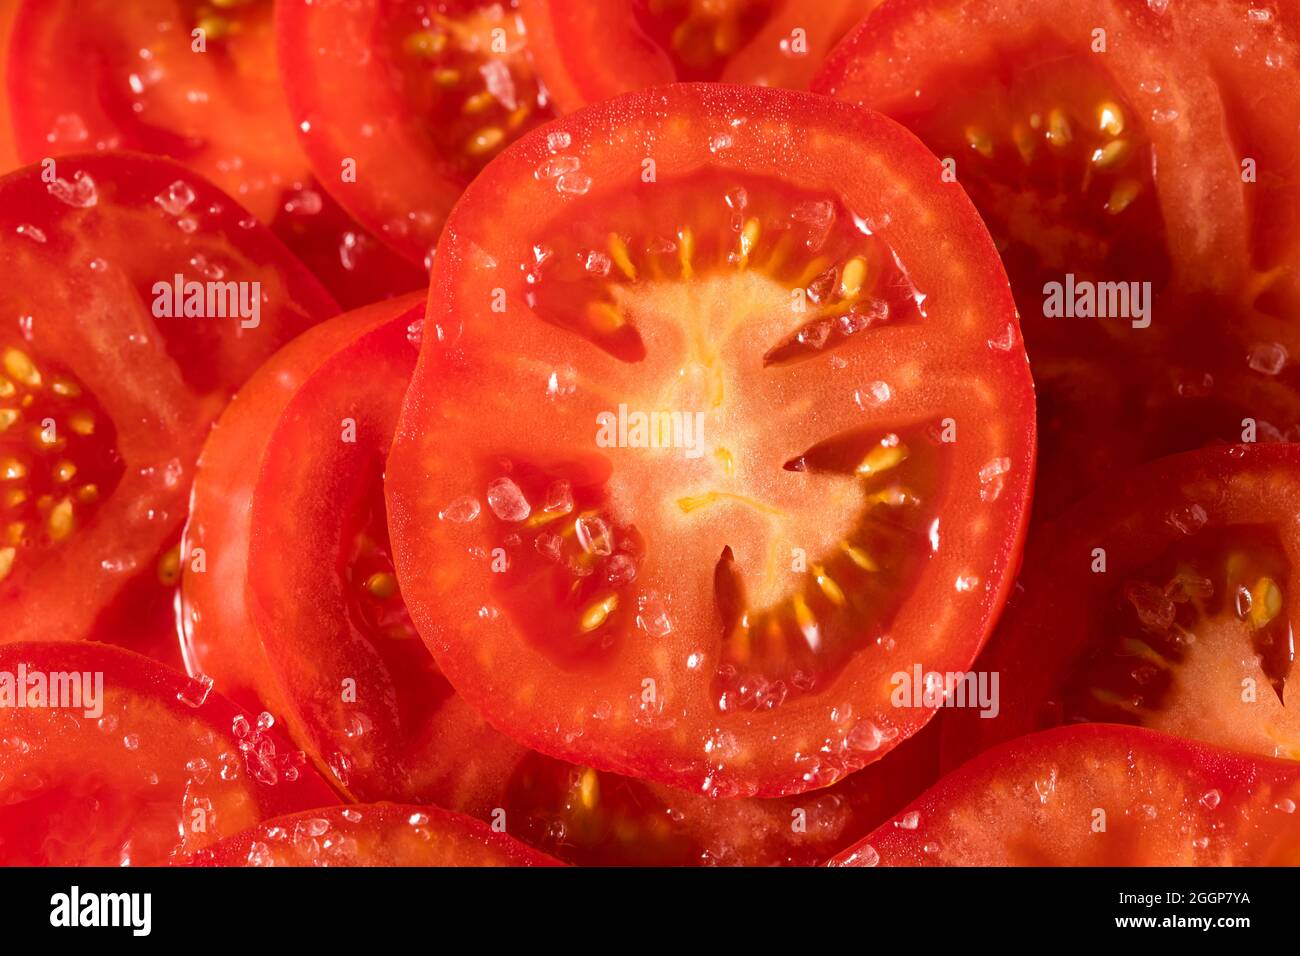 Tomates en tranches biologiques saines et salées prêtes à manger Banque D'Images